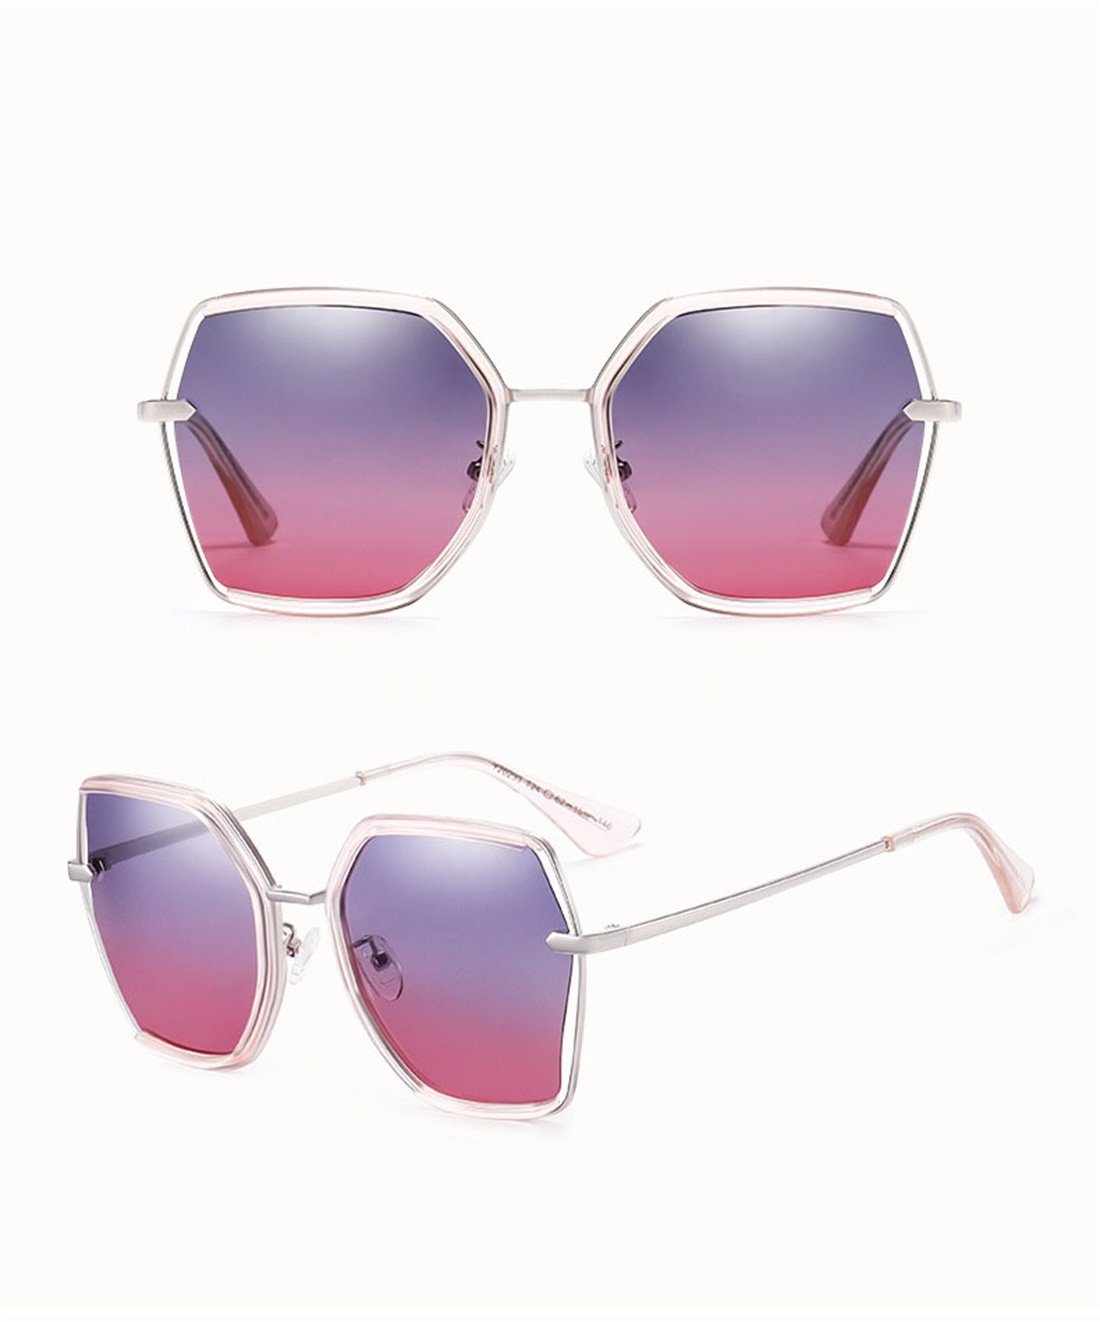 blau polarisierte Sonnenbrille Sonnenbrille, Sonnenschirme Damen Box Mode Sonnenbrille DÖRÖY